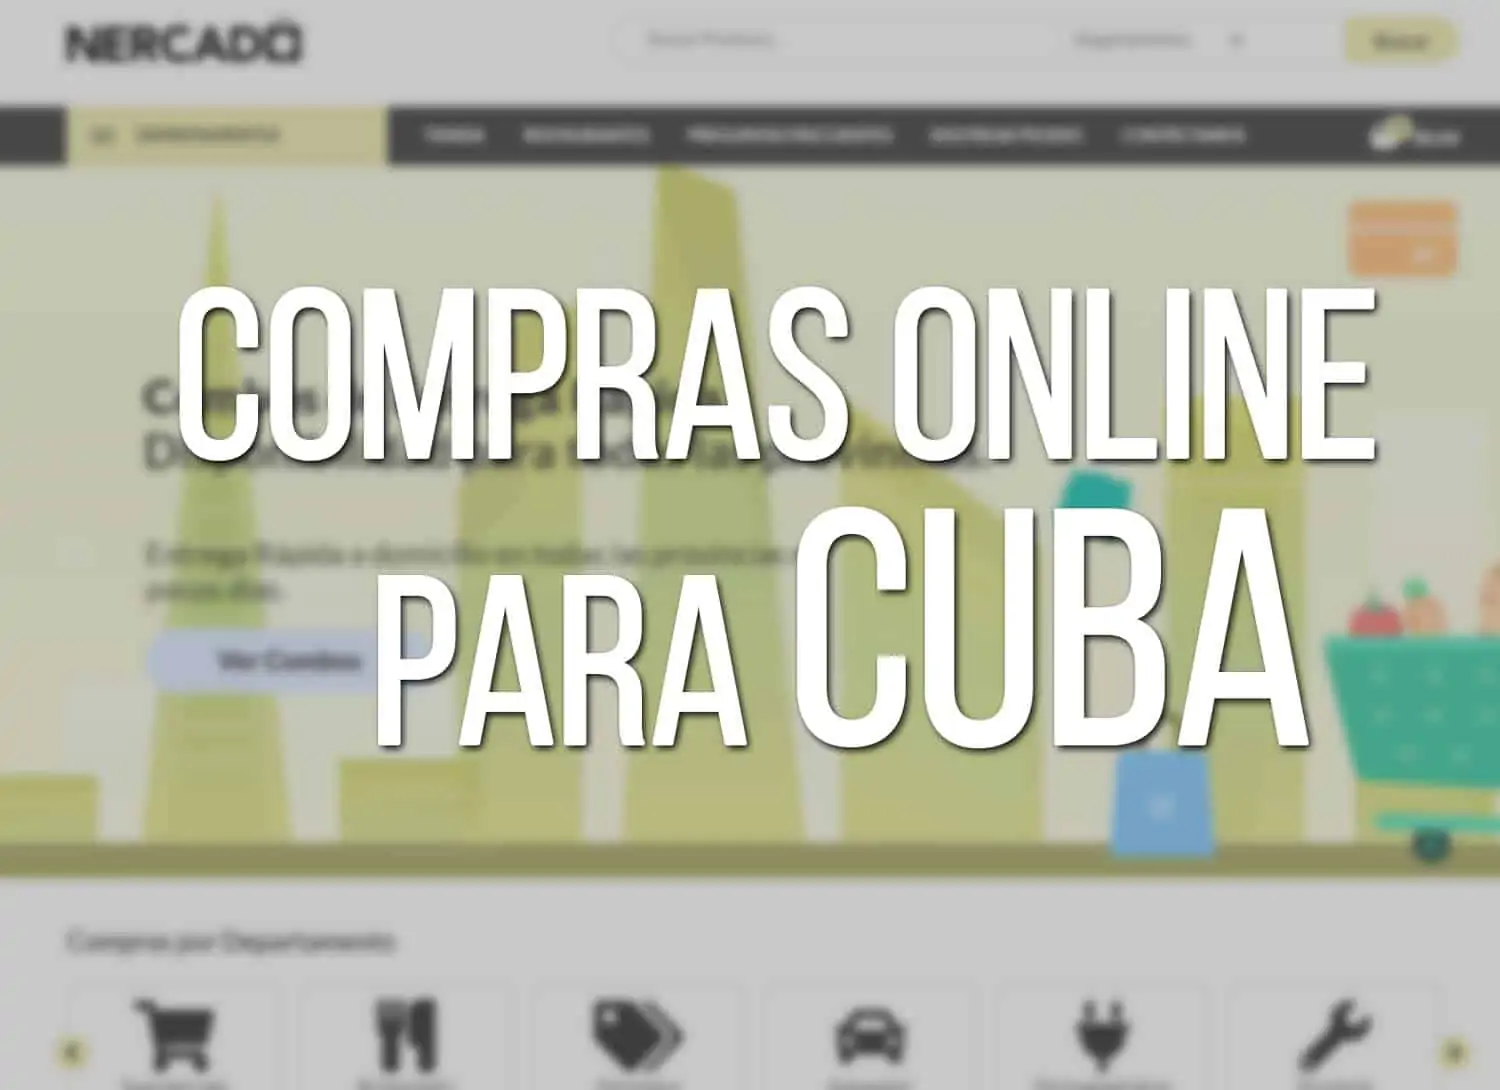 Compras Online para Cuba con Nercado.com